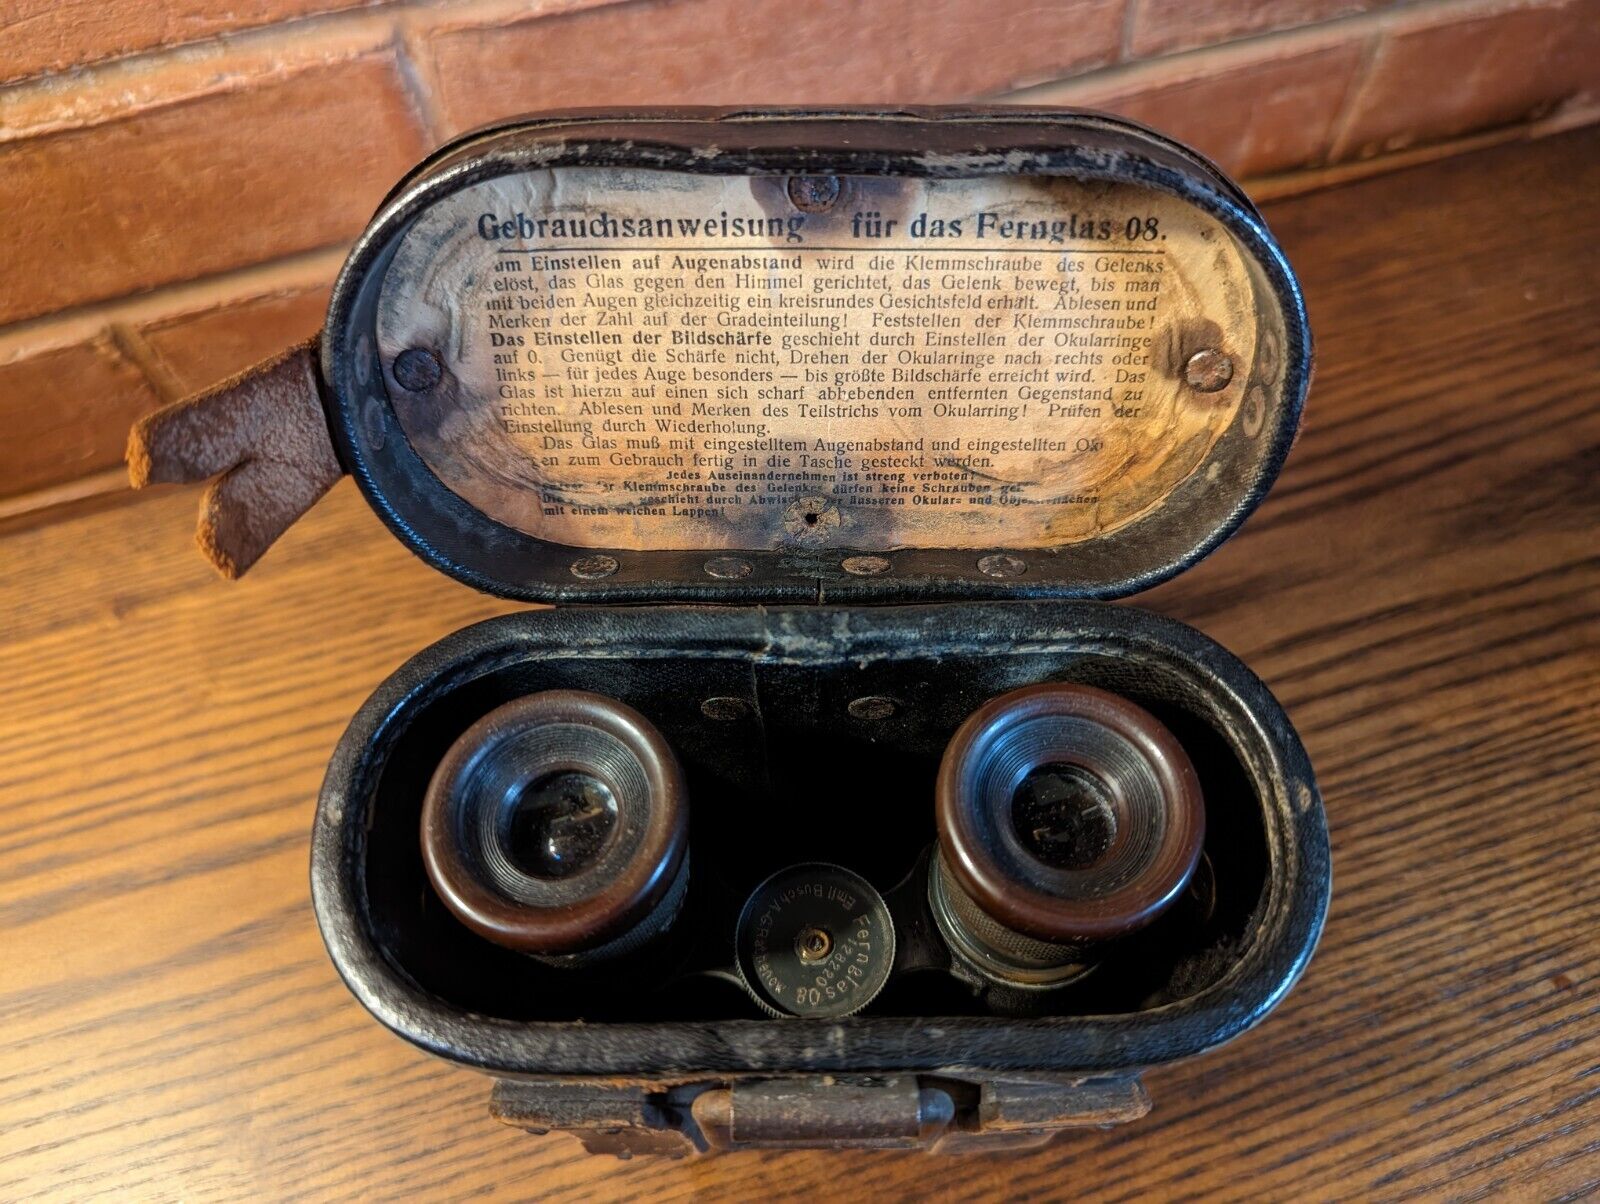 Antique Set Of WW1 German Binoculars - Fernglas 08 Emil Busch with Original Case